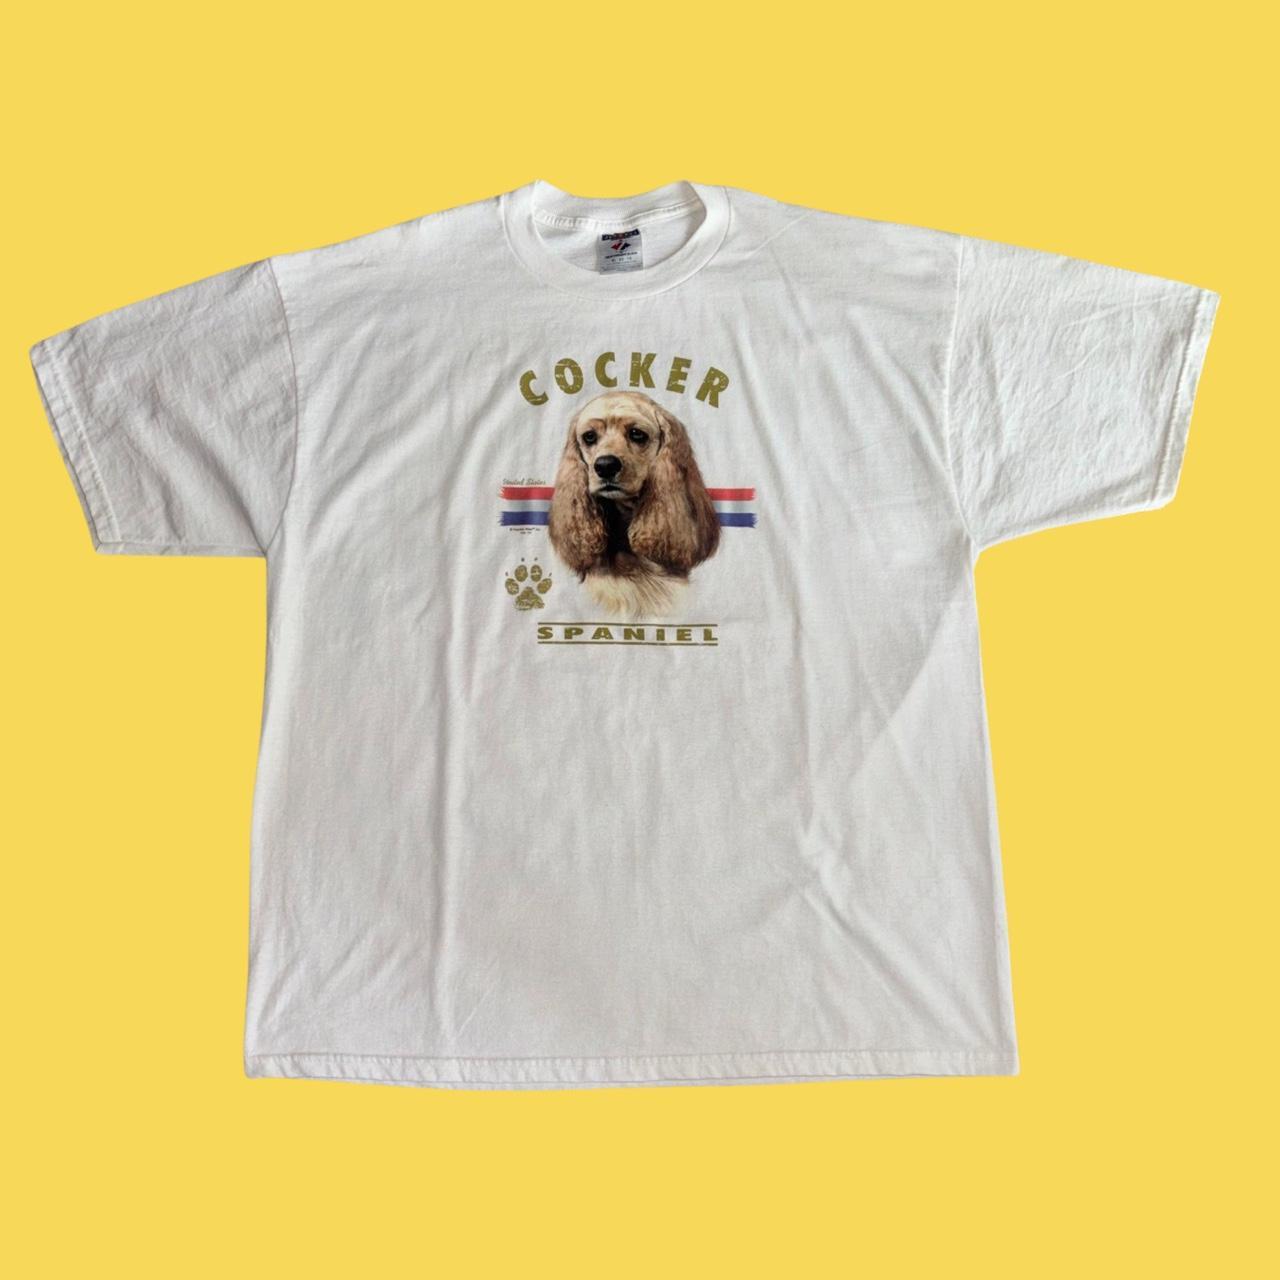 Vintage Cocker Spaniel Dog T-shirt Size... - Depop